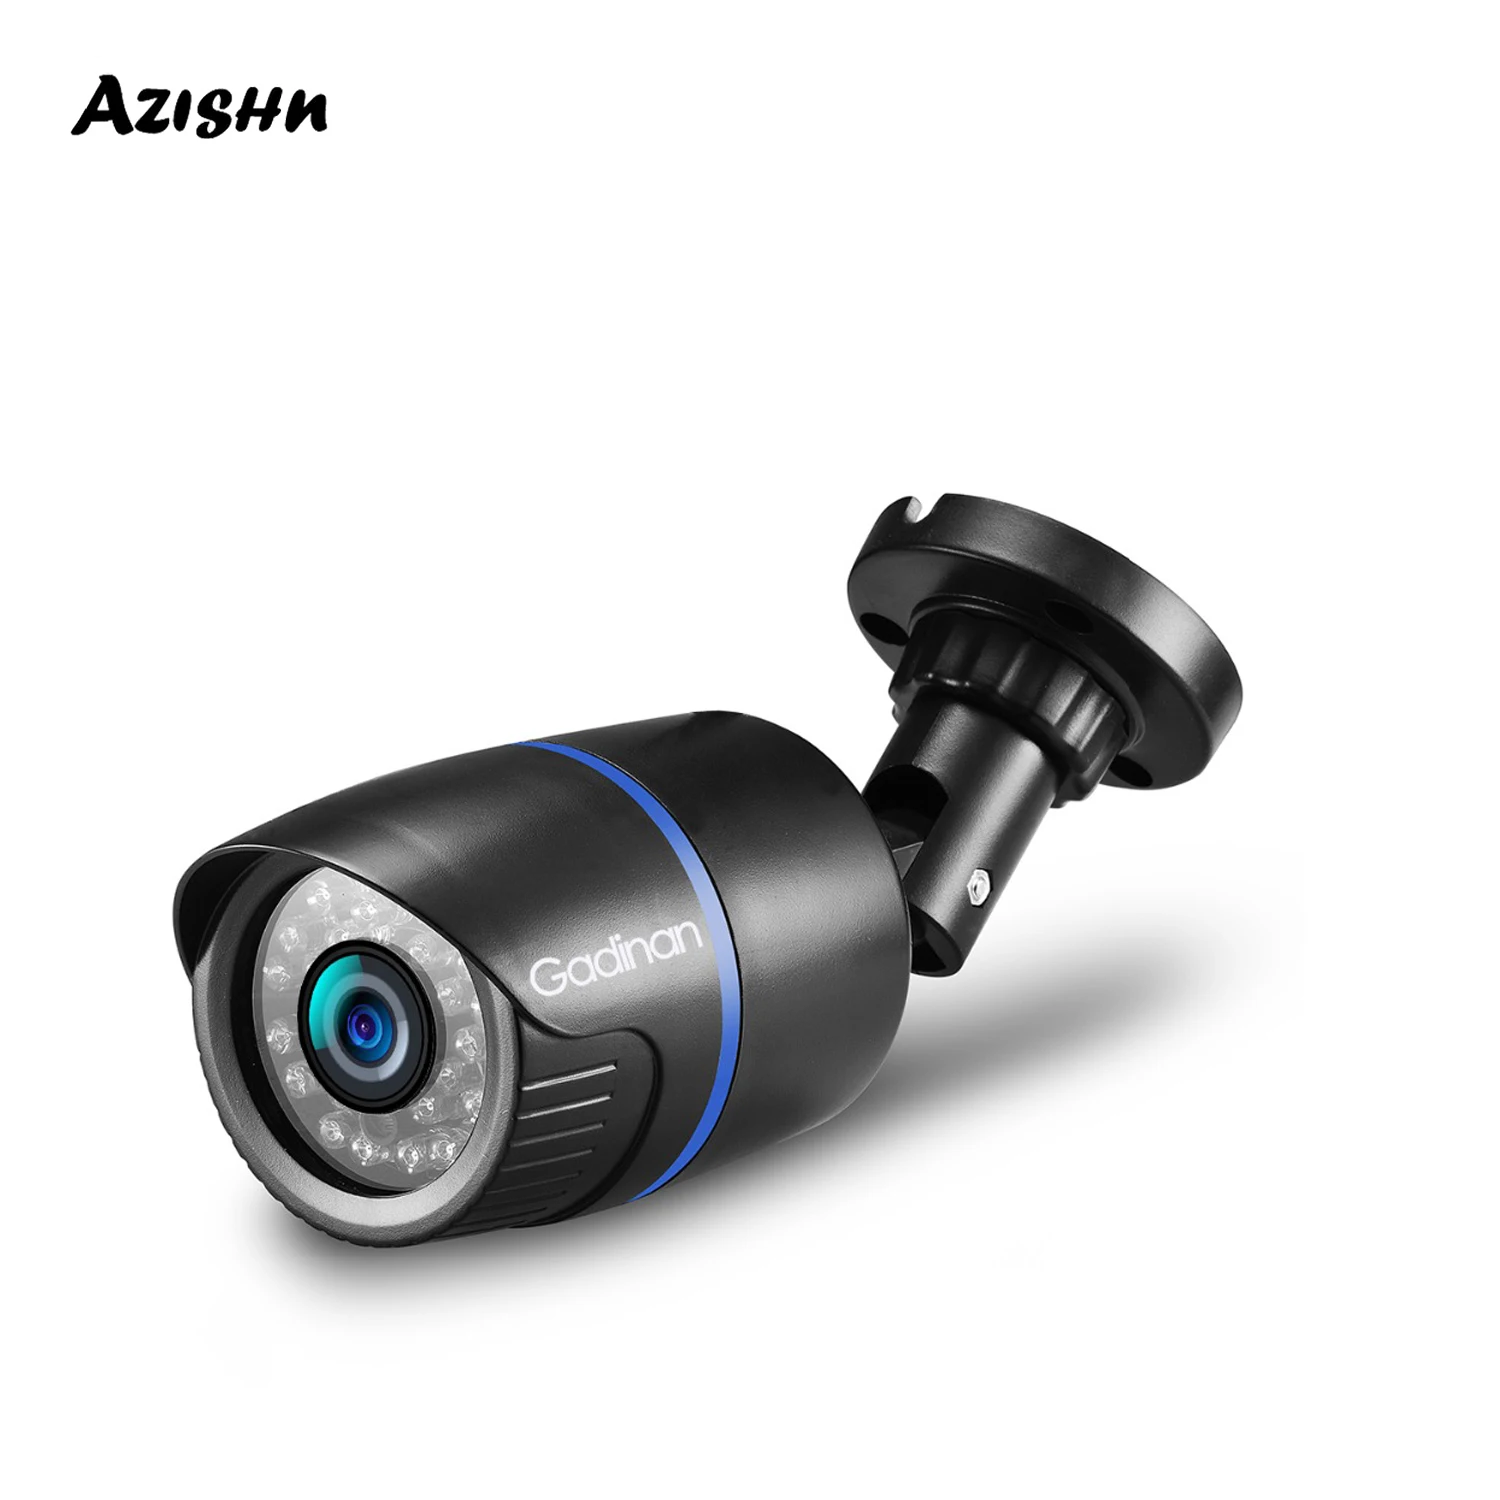 

AZISHN Analog CCTV Camera 800TVL 1000TVL Outdoor Waterproof 3.6mm Lens IR Night Vision Video Bullet Surveillance Plastic Camera